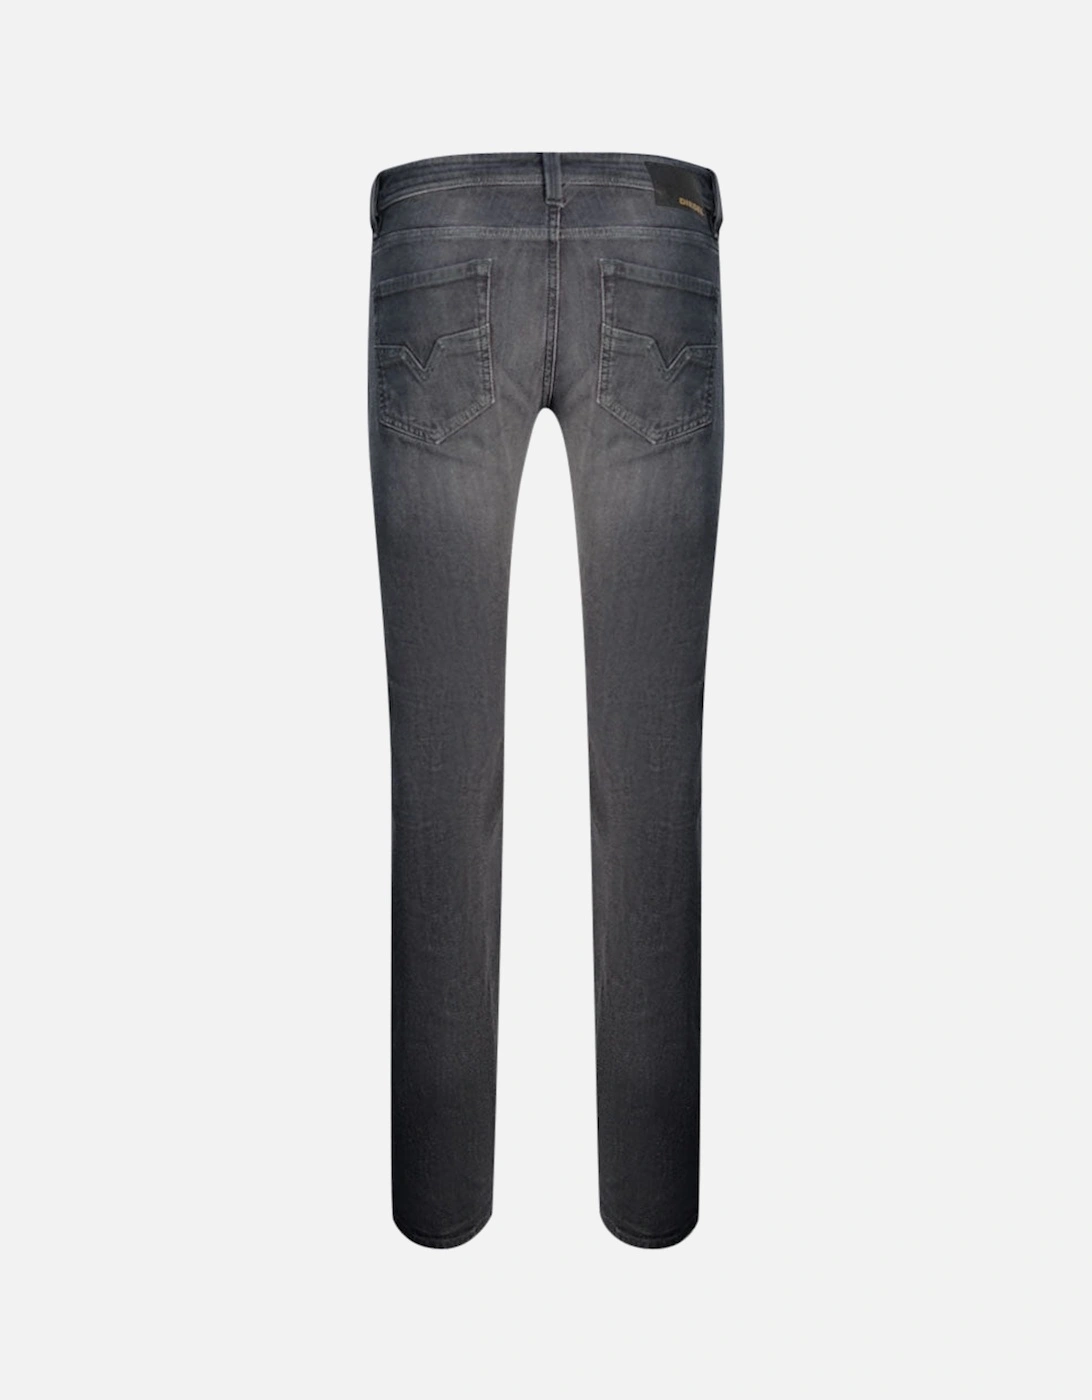 Larkee 0095I Faded Grey Jeans